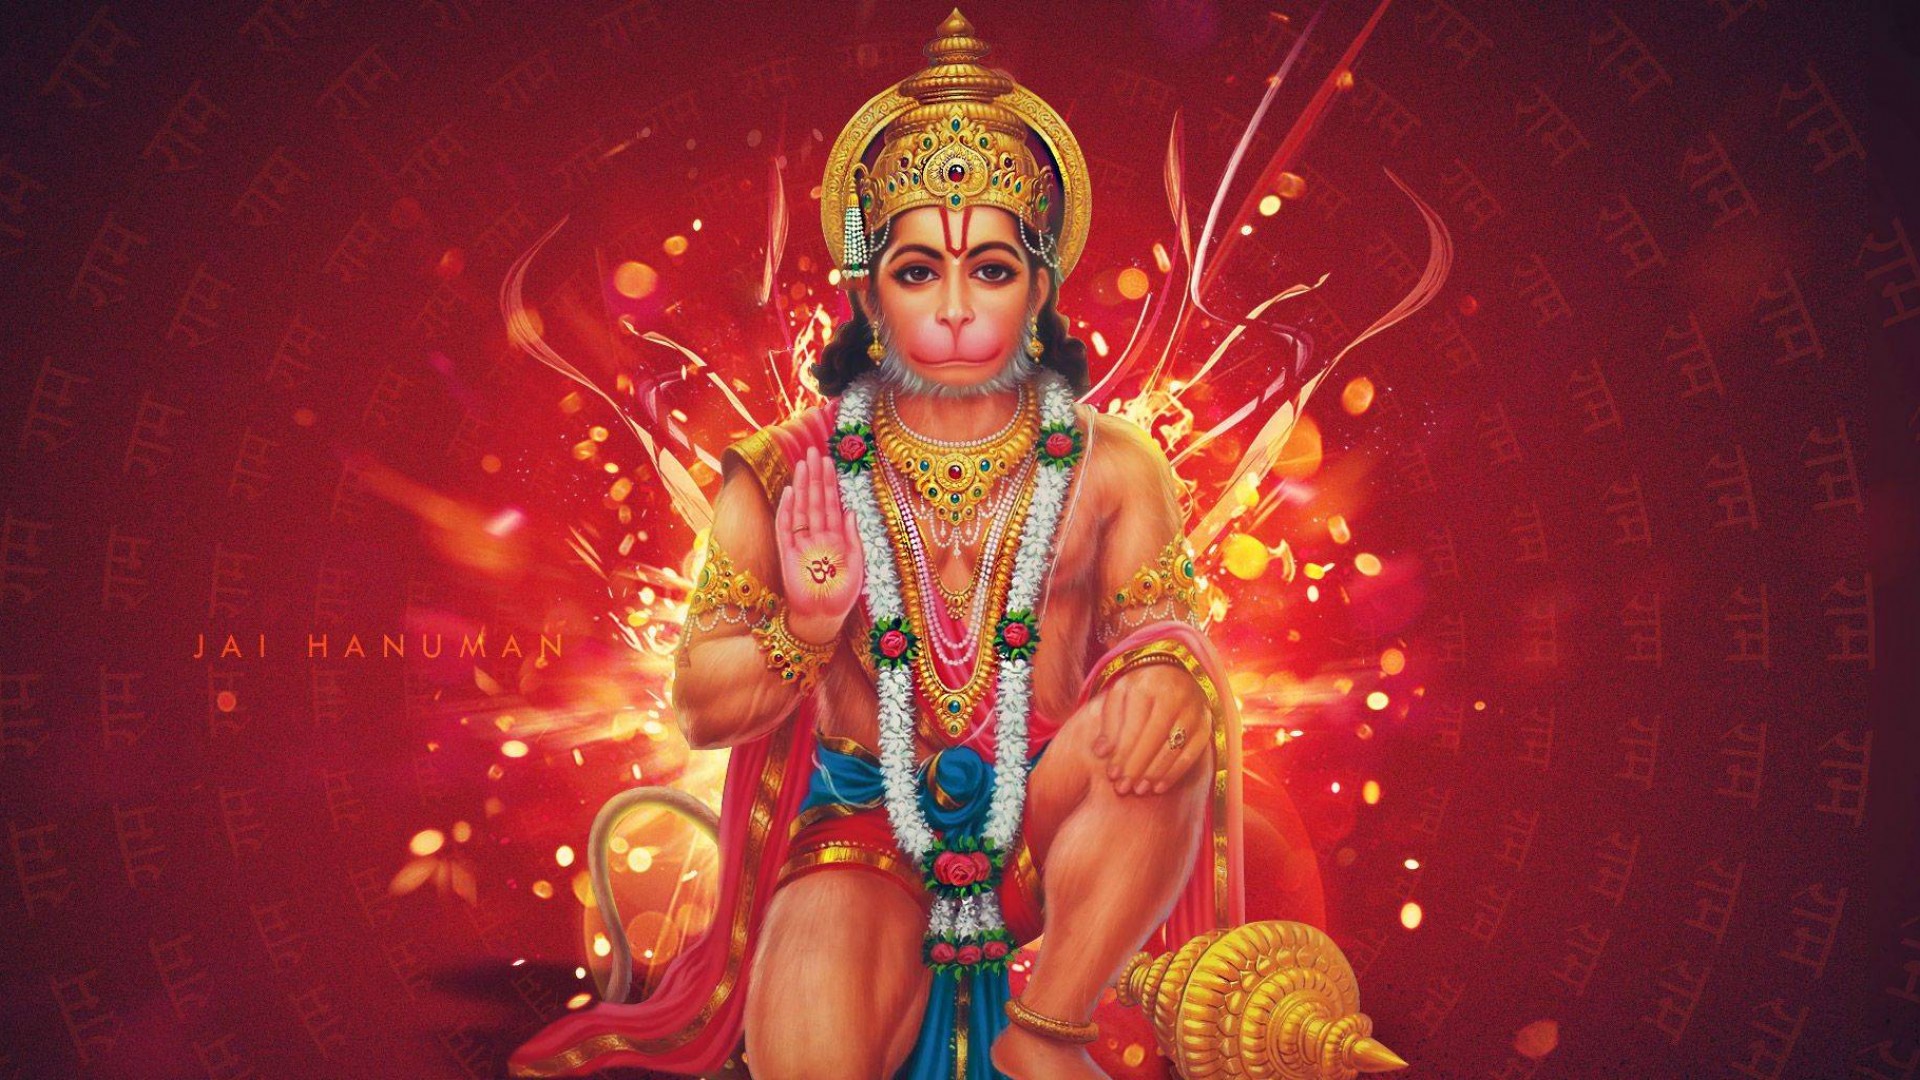 Hanuman ji wallpapers Hanuman ji Images